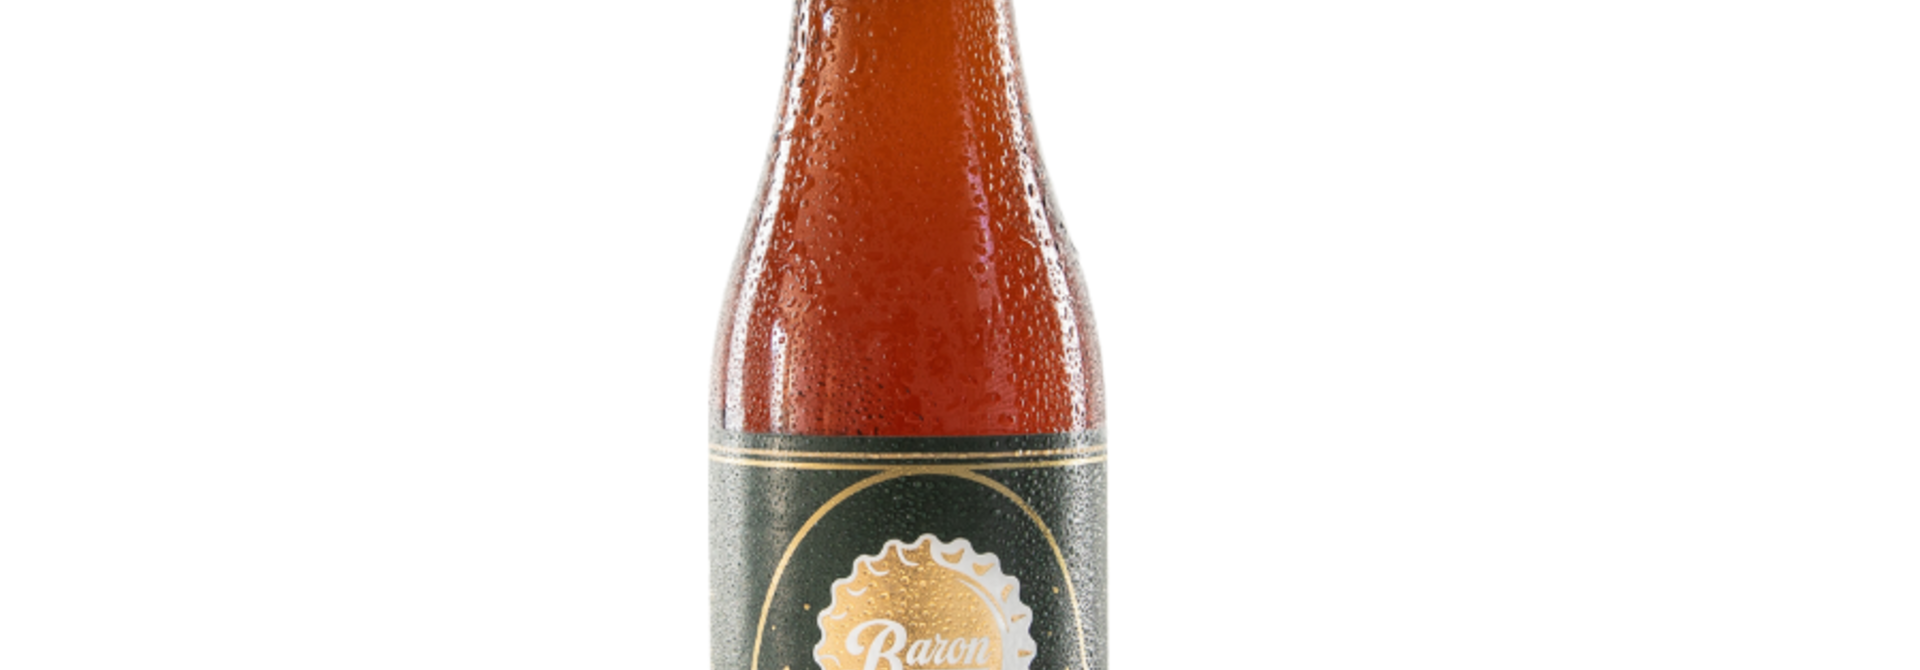 Baron Brouwerij Diplomaat Rum Infused 33cl 6.9%